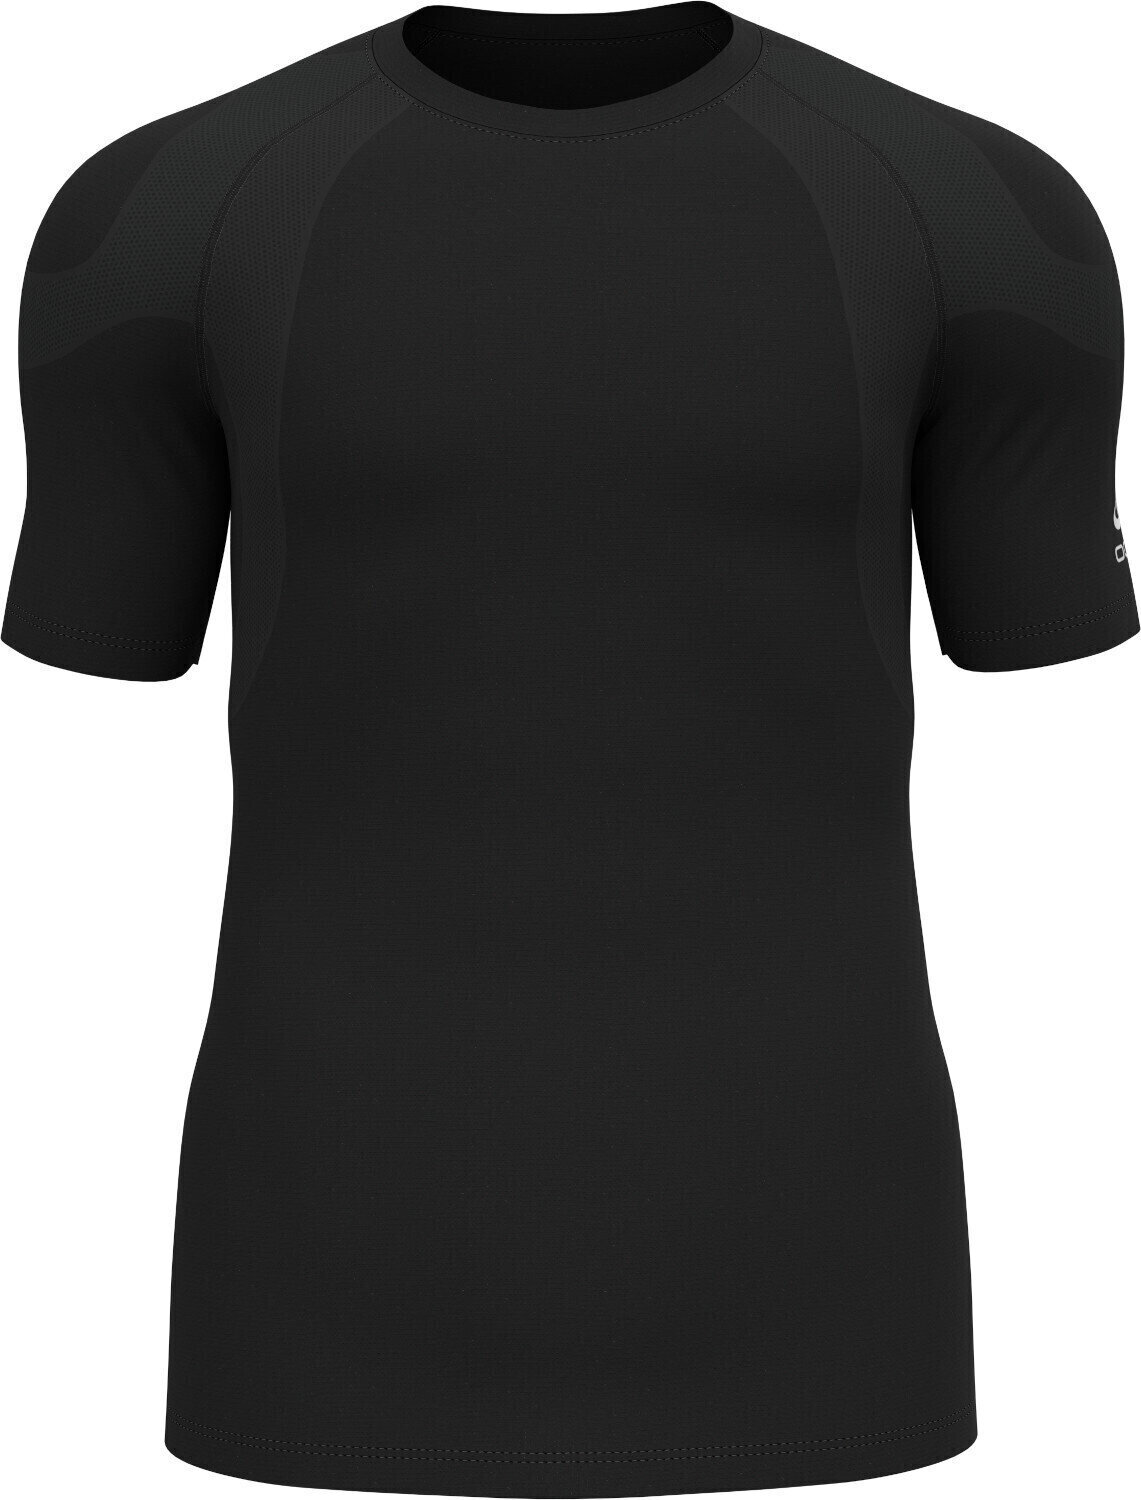 Koszulka do biegania z krótkim rękawem Odlo Active Spine 2.0 T-Shirt Black S Koszulka do biegania z krótkim rękawem